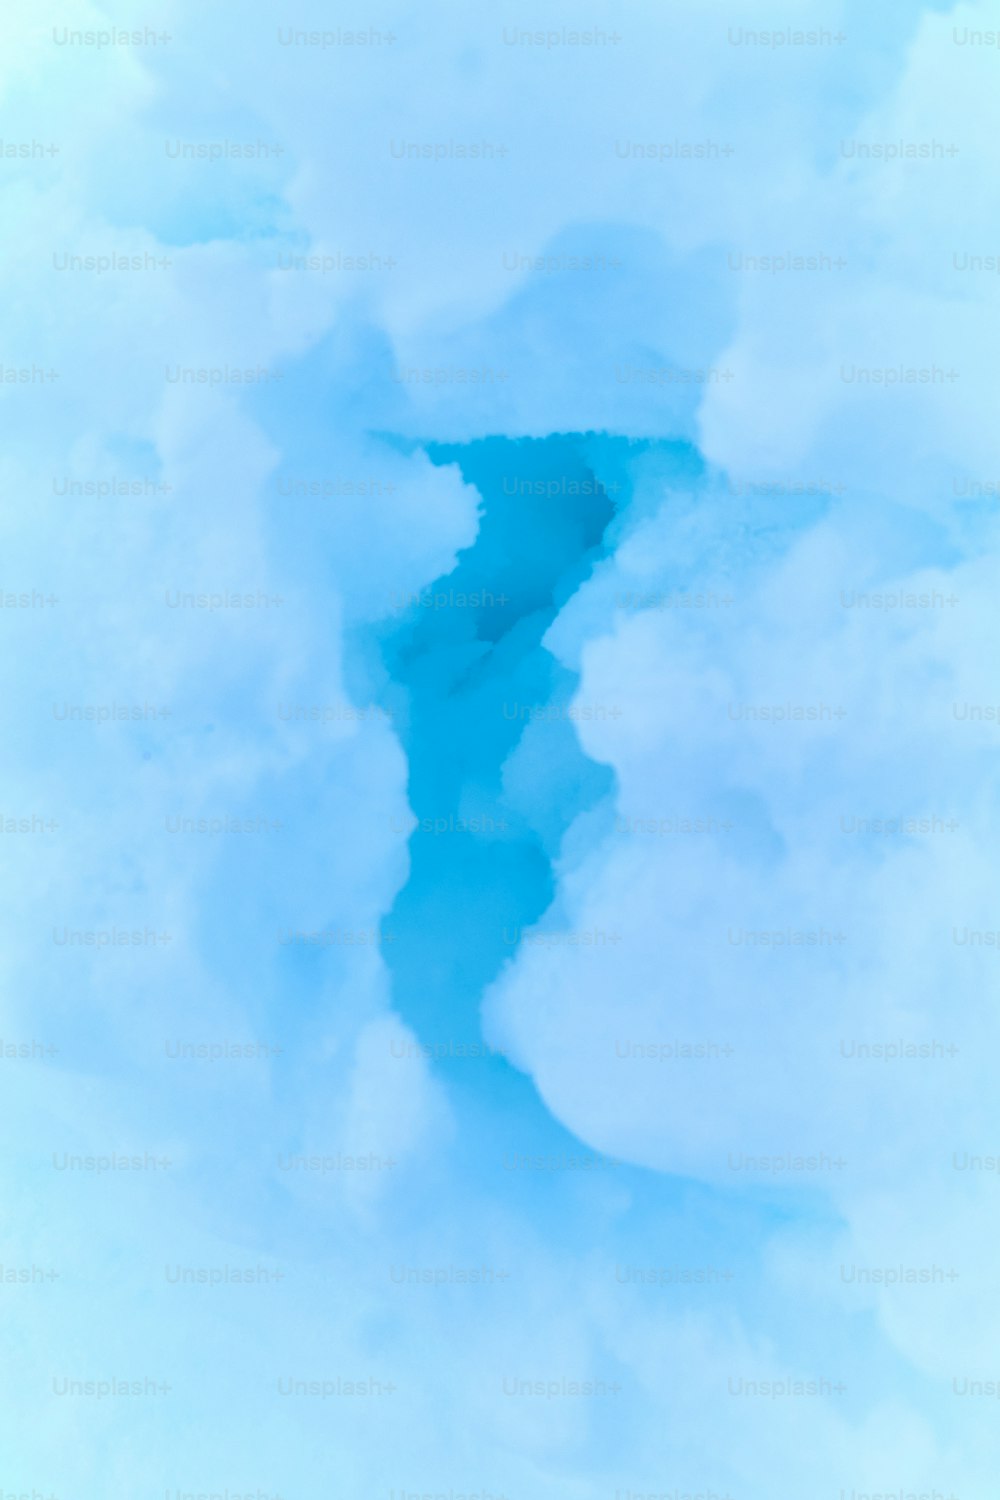 un courant d’eau au milieu d’un ciel nuageux